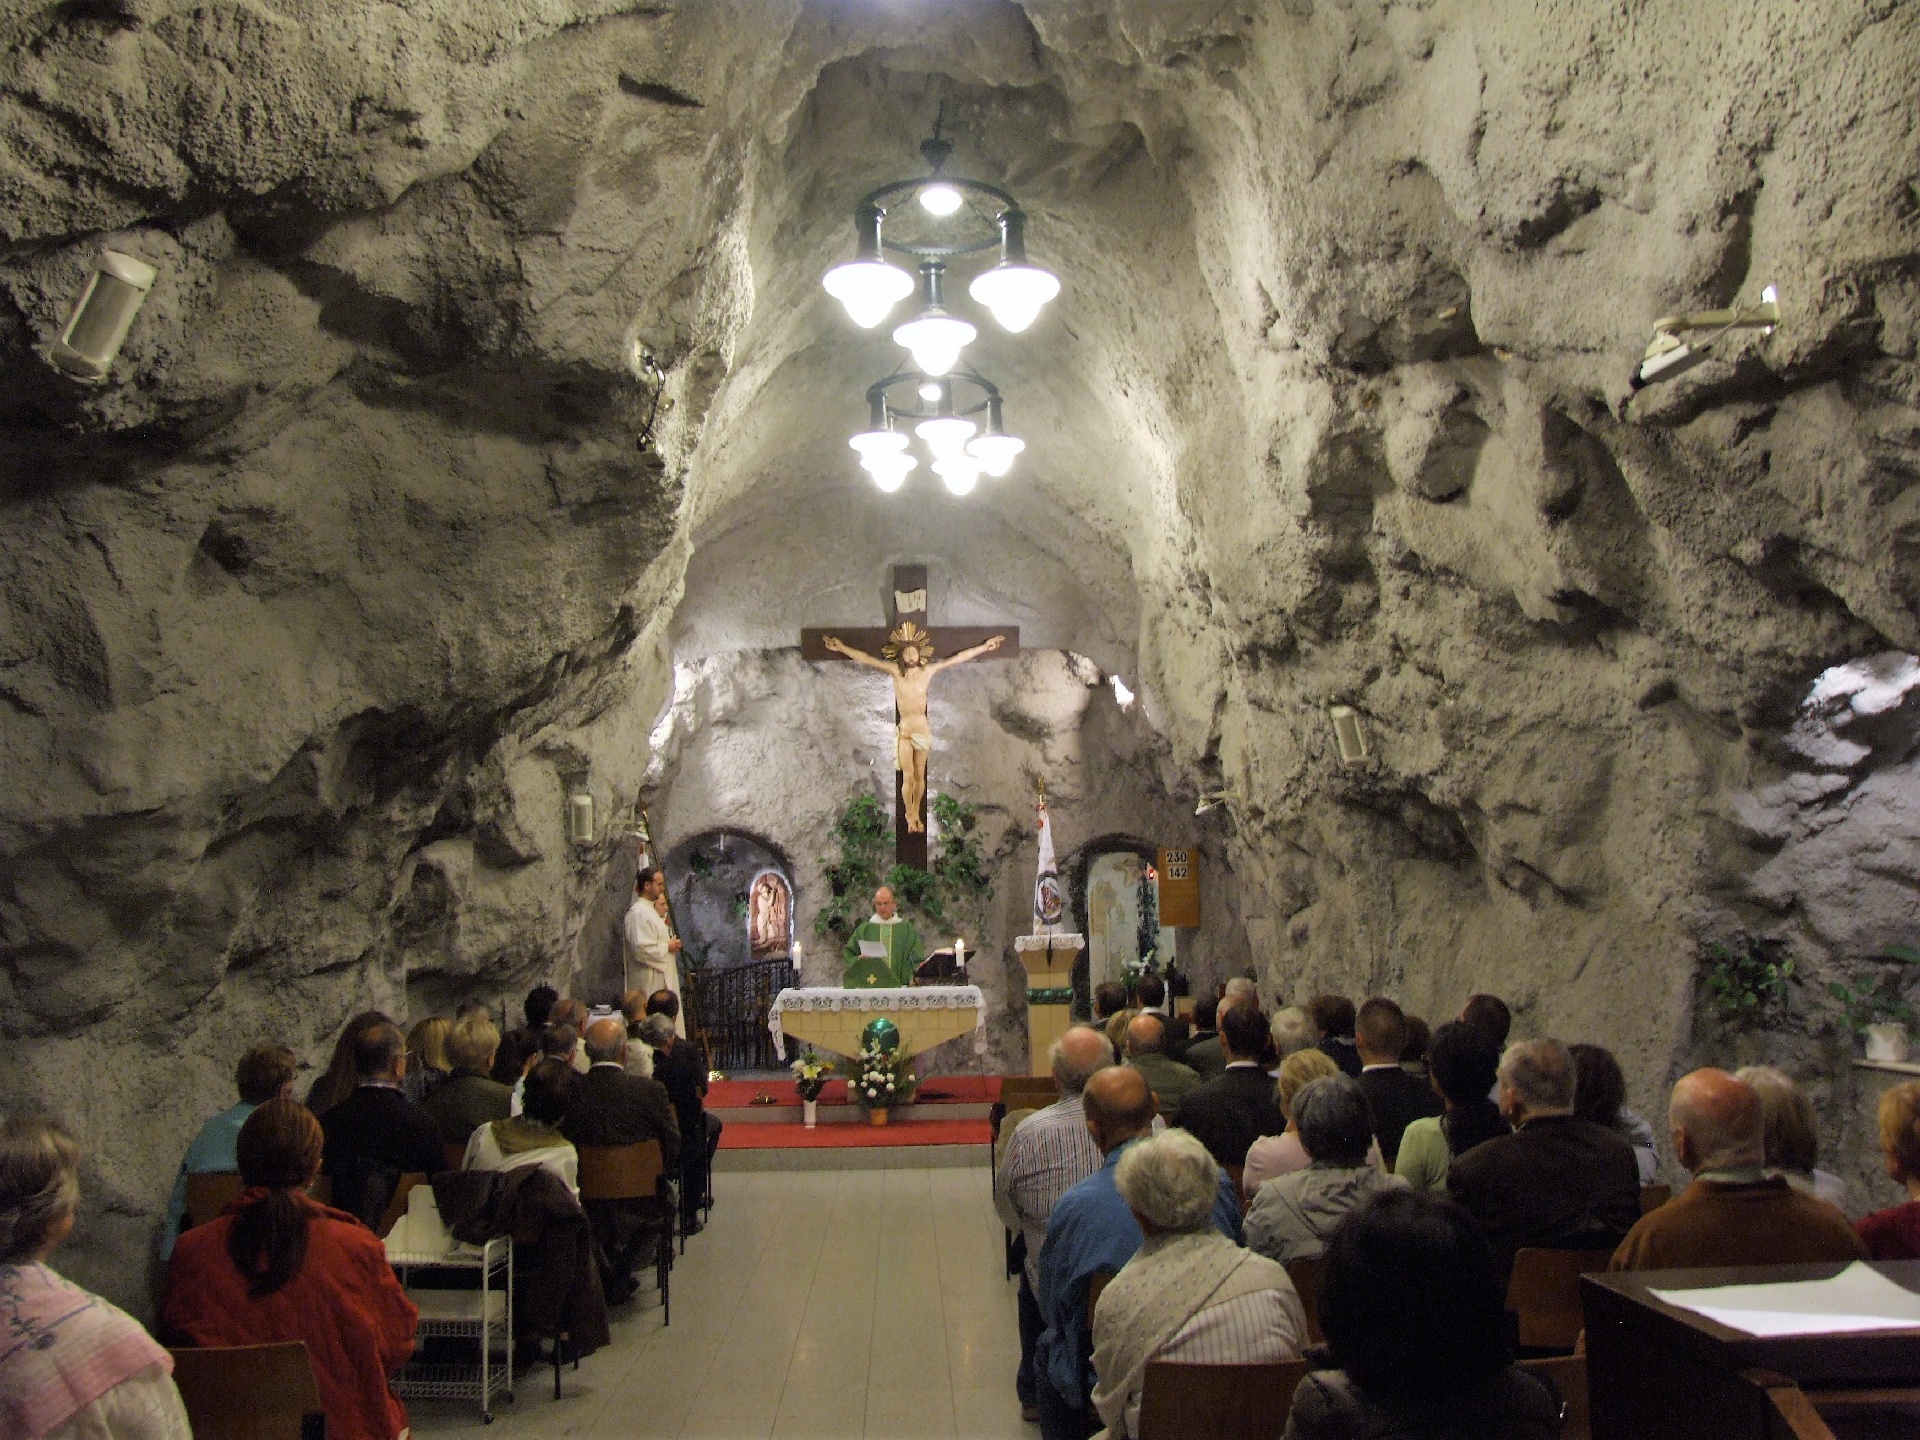 Szent Hubertusz erdész-vadász-bányász-kohász szentmise lesz Budapesten